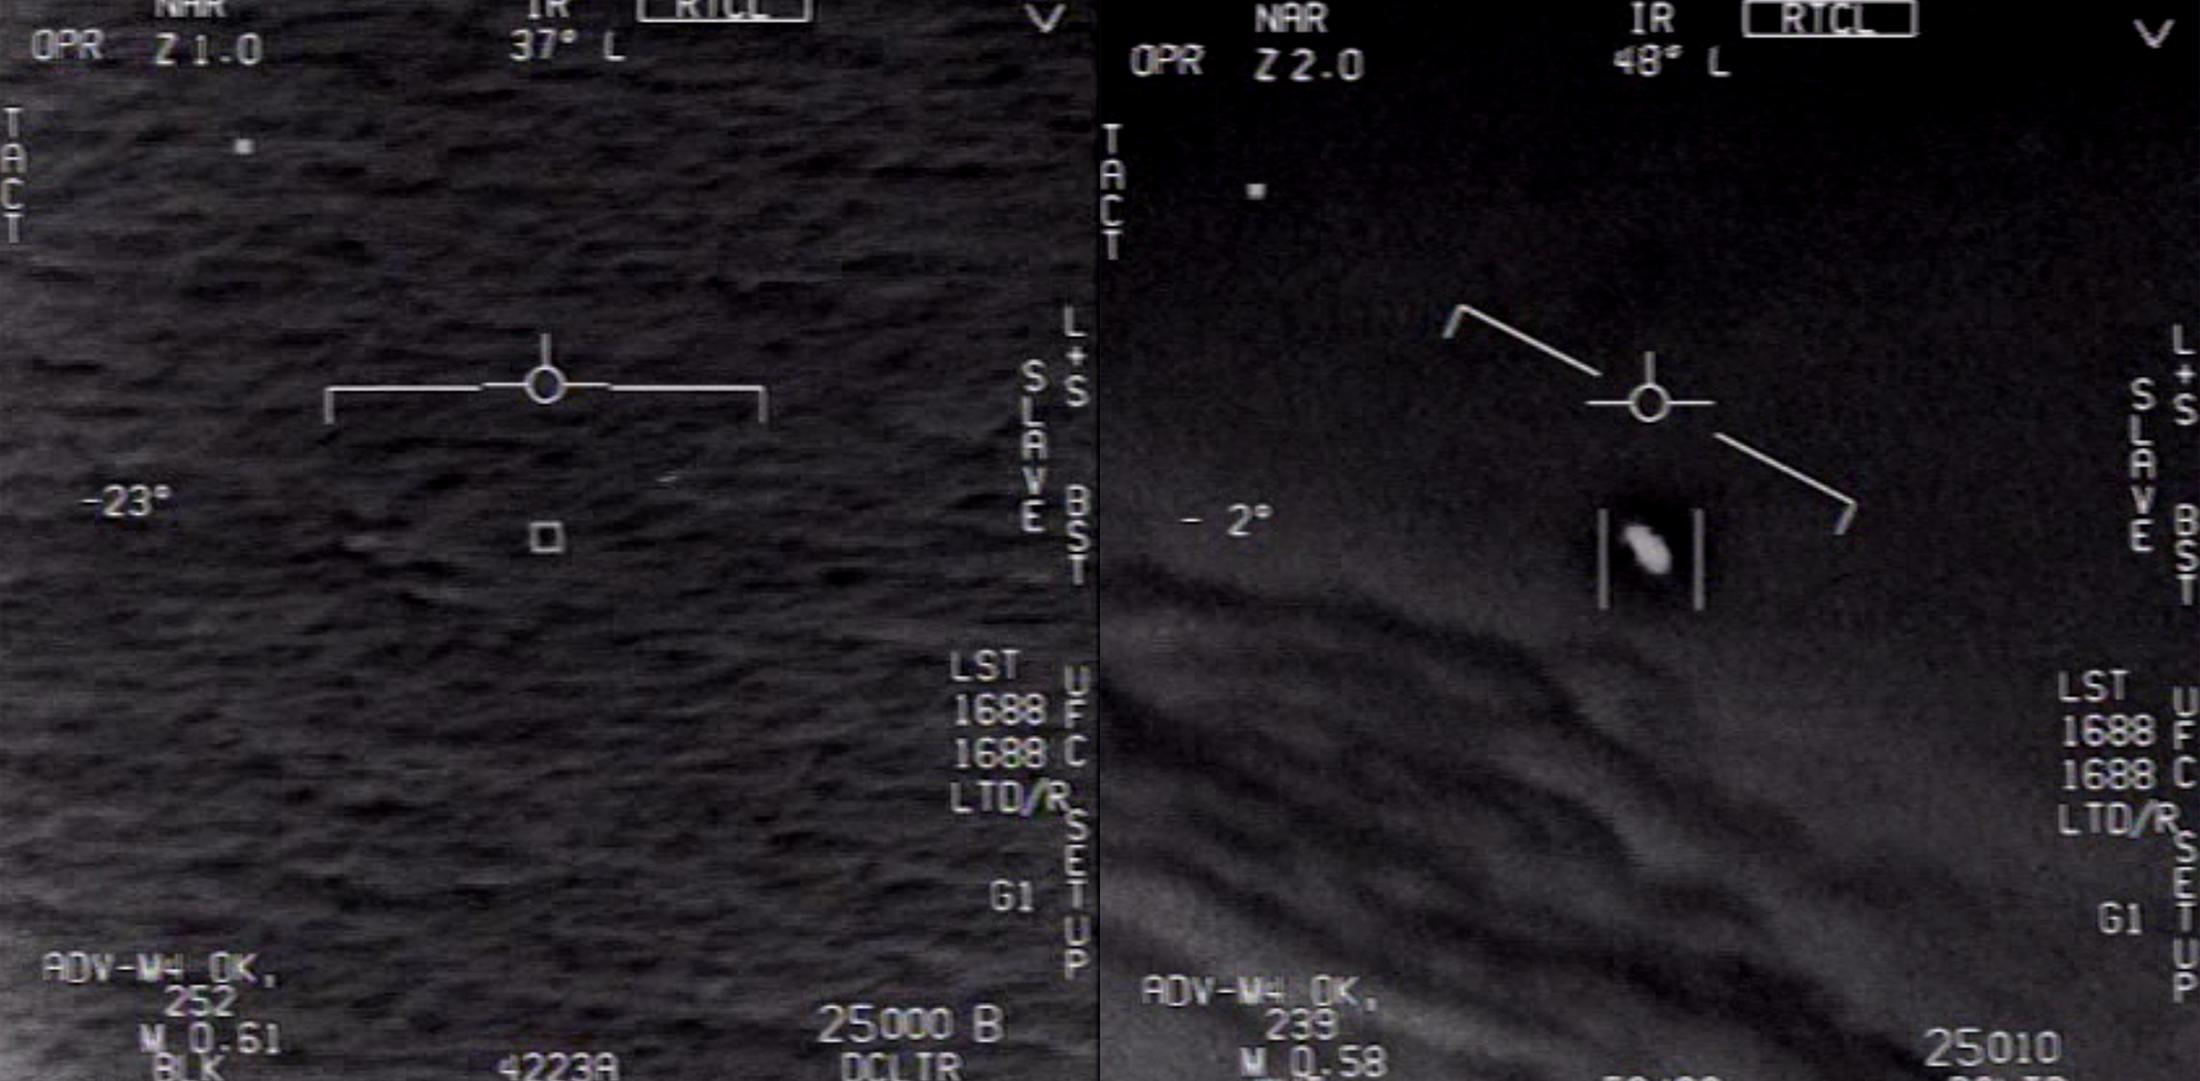 Phénomènes aériens non identifiés capturés par des pilotes d'avions de chasse américains en 2004 et 2015. © DOD, U.S. Navy